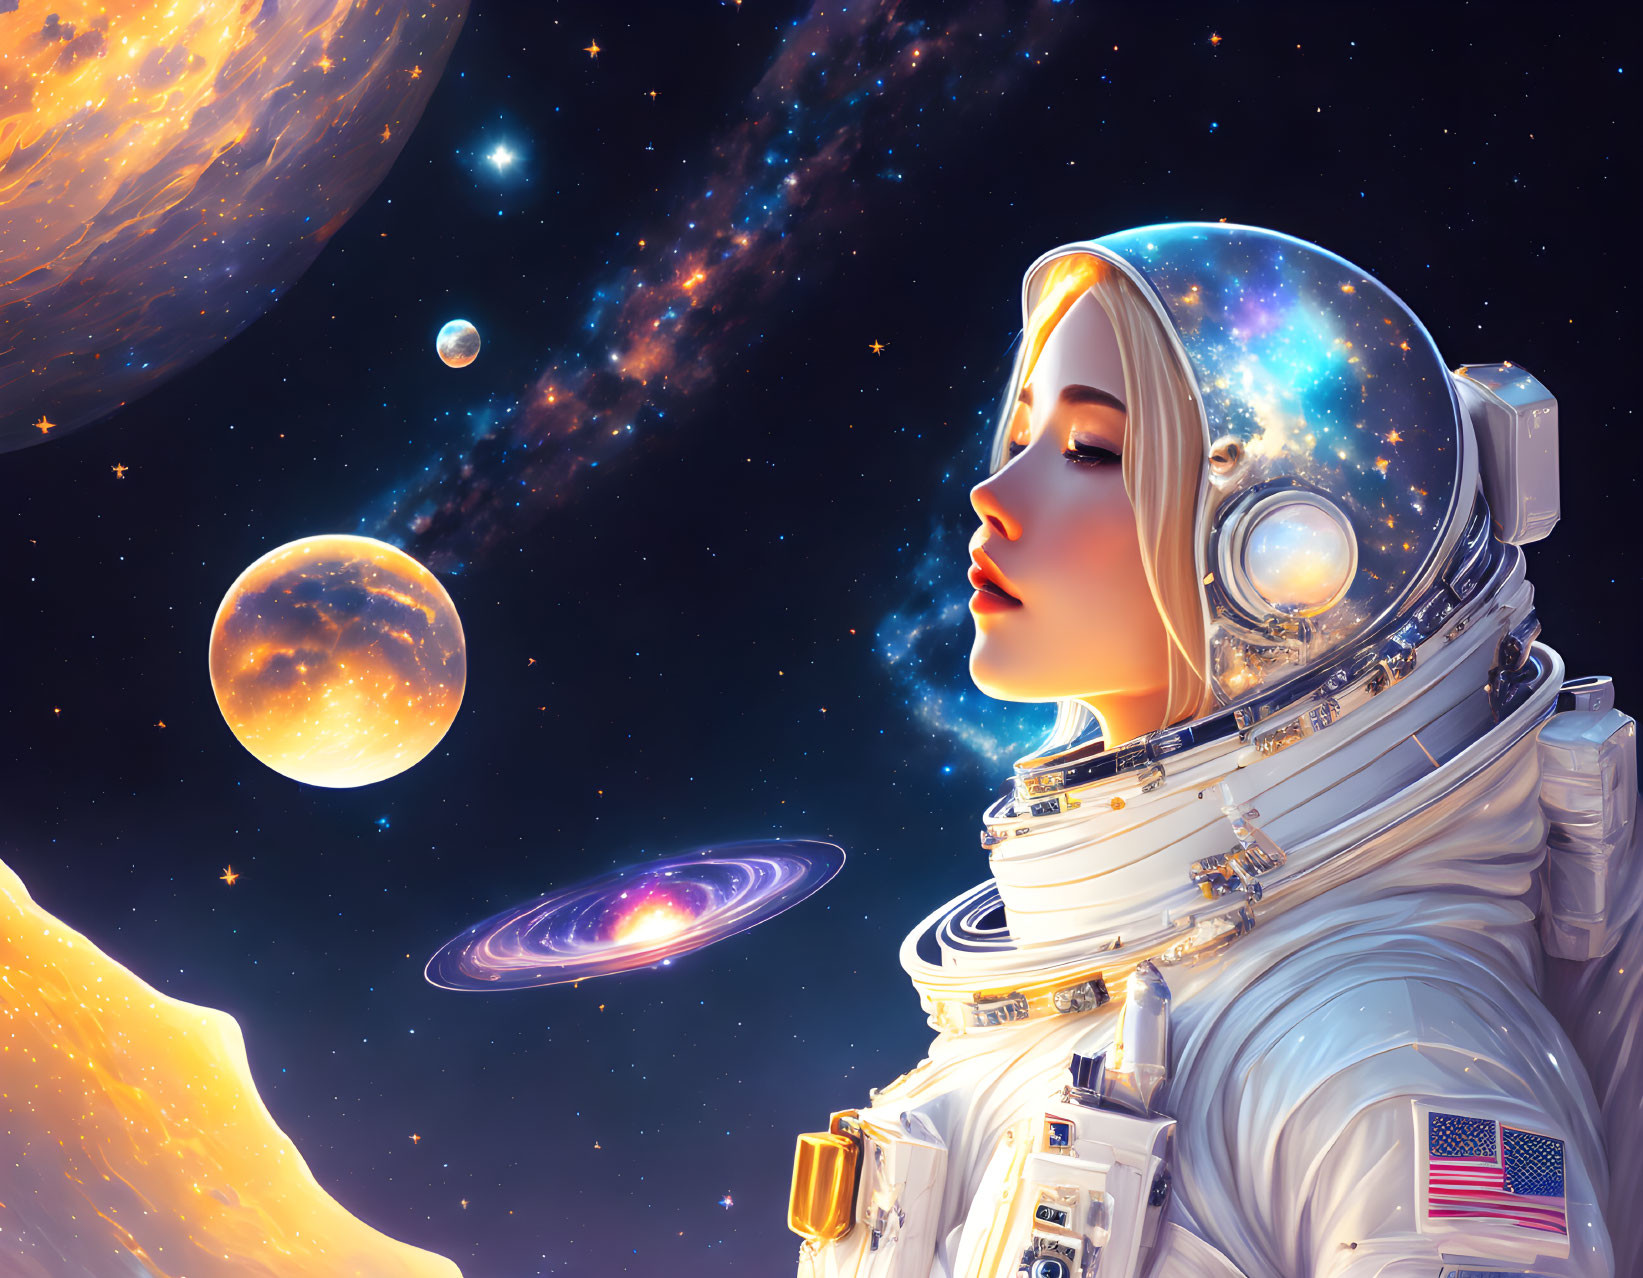 Astronaut in reflective visor views vibrant cosmic scene